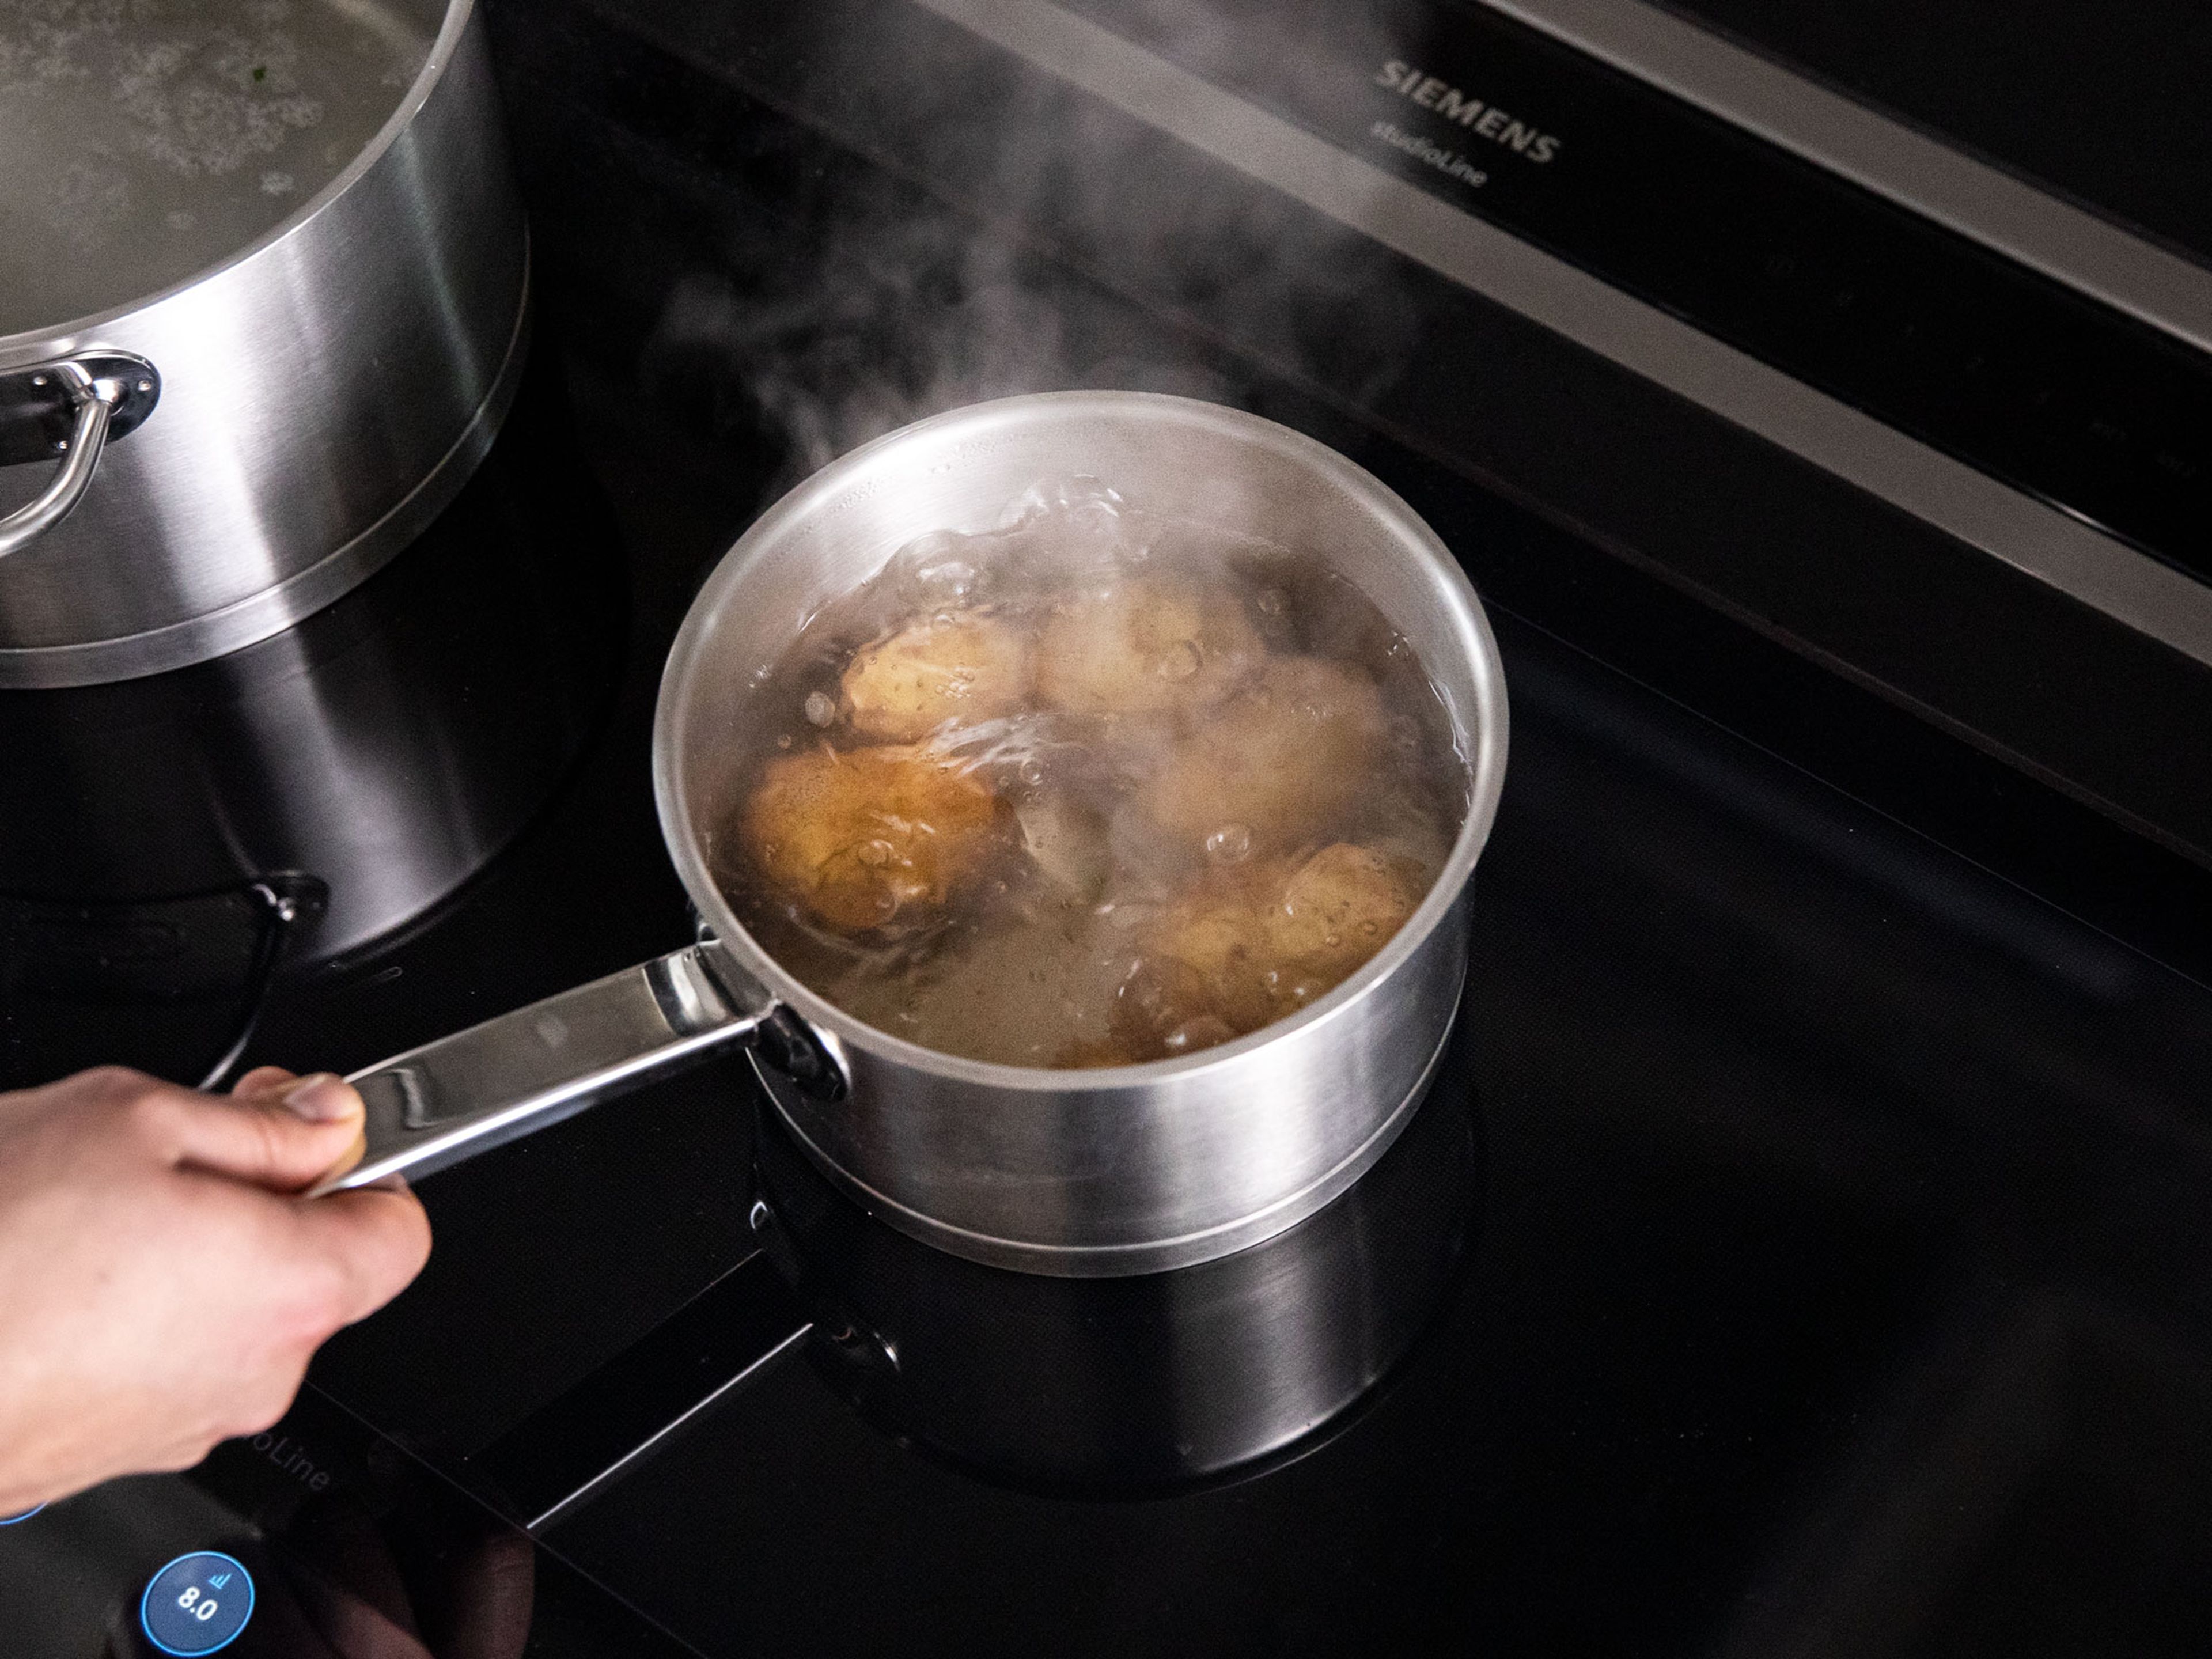 Währenddessen Kartoffeln in einen Topf mit kaltem Wasser geben und zum Kochen bringen. Für ca. 15 Min. köcheln lassen, dann abtropfen.